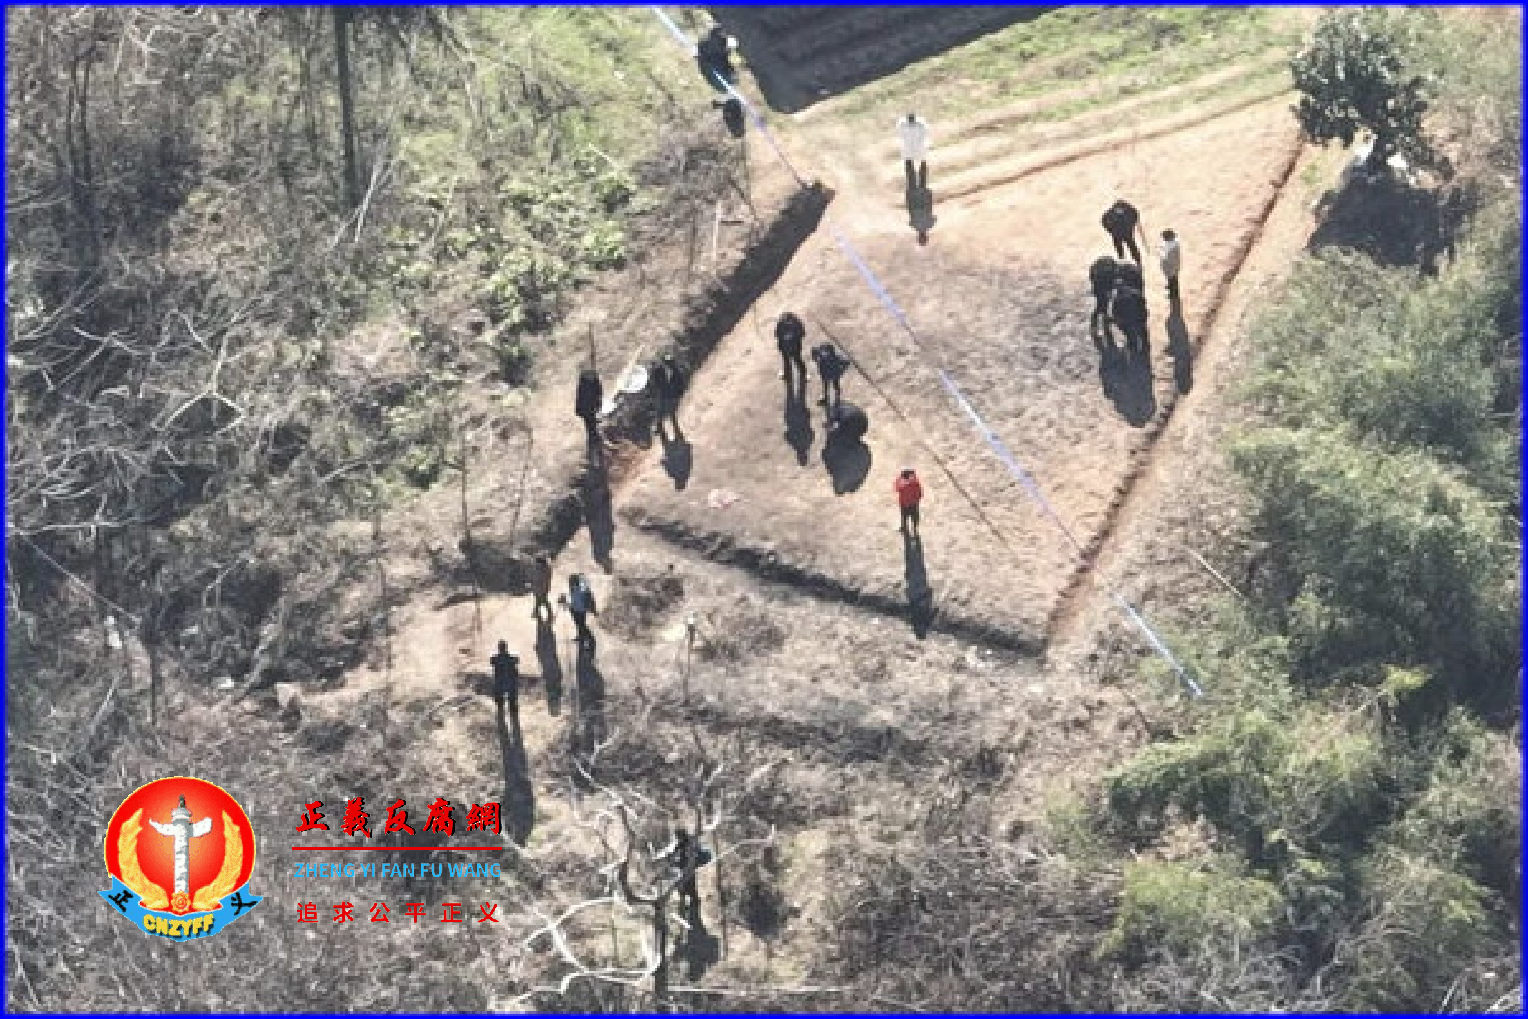 胡鑫宇的遗体在距离致远中学不远处一粮库被发现后，事发现场被围起警戒线，有疑似法医和警察在勘察现场。.png